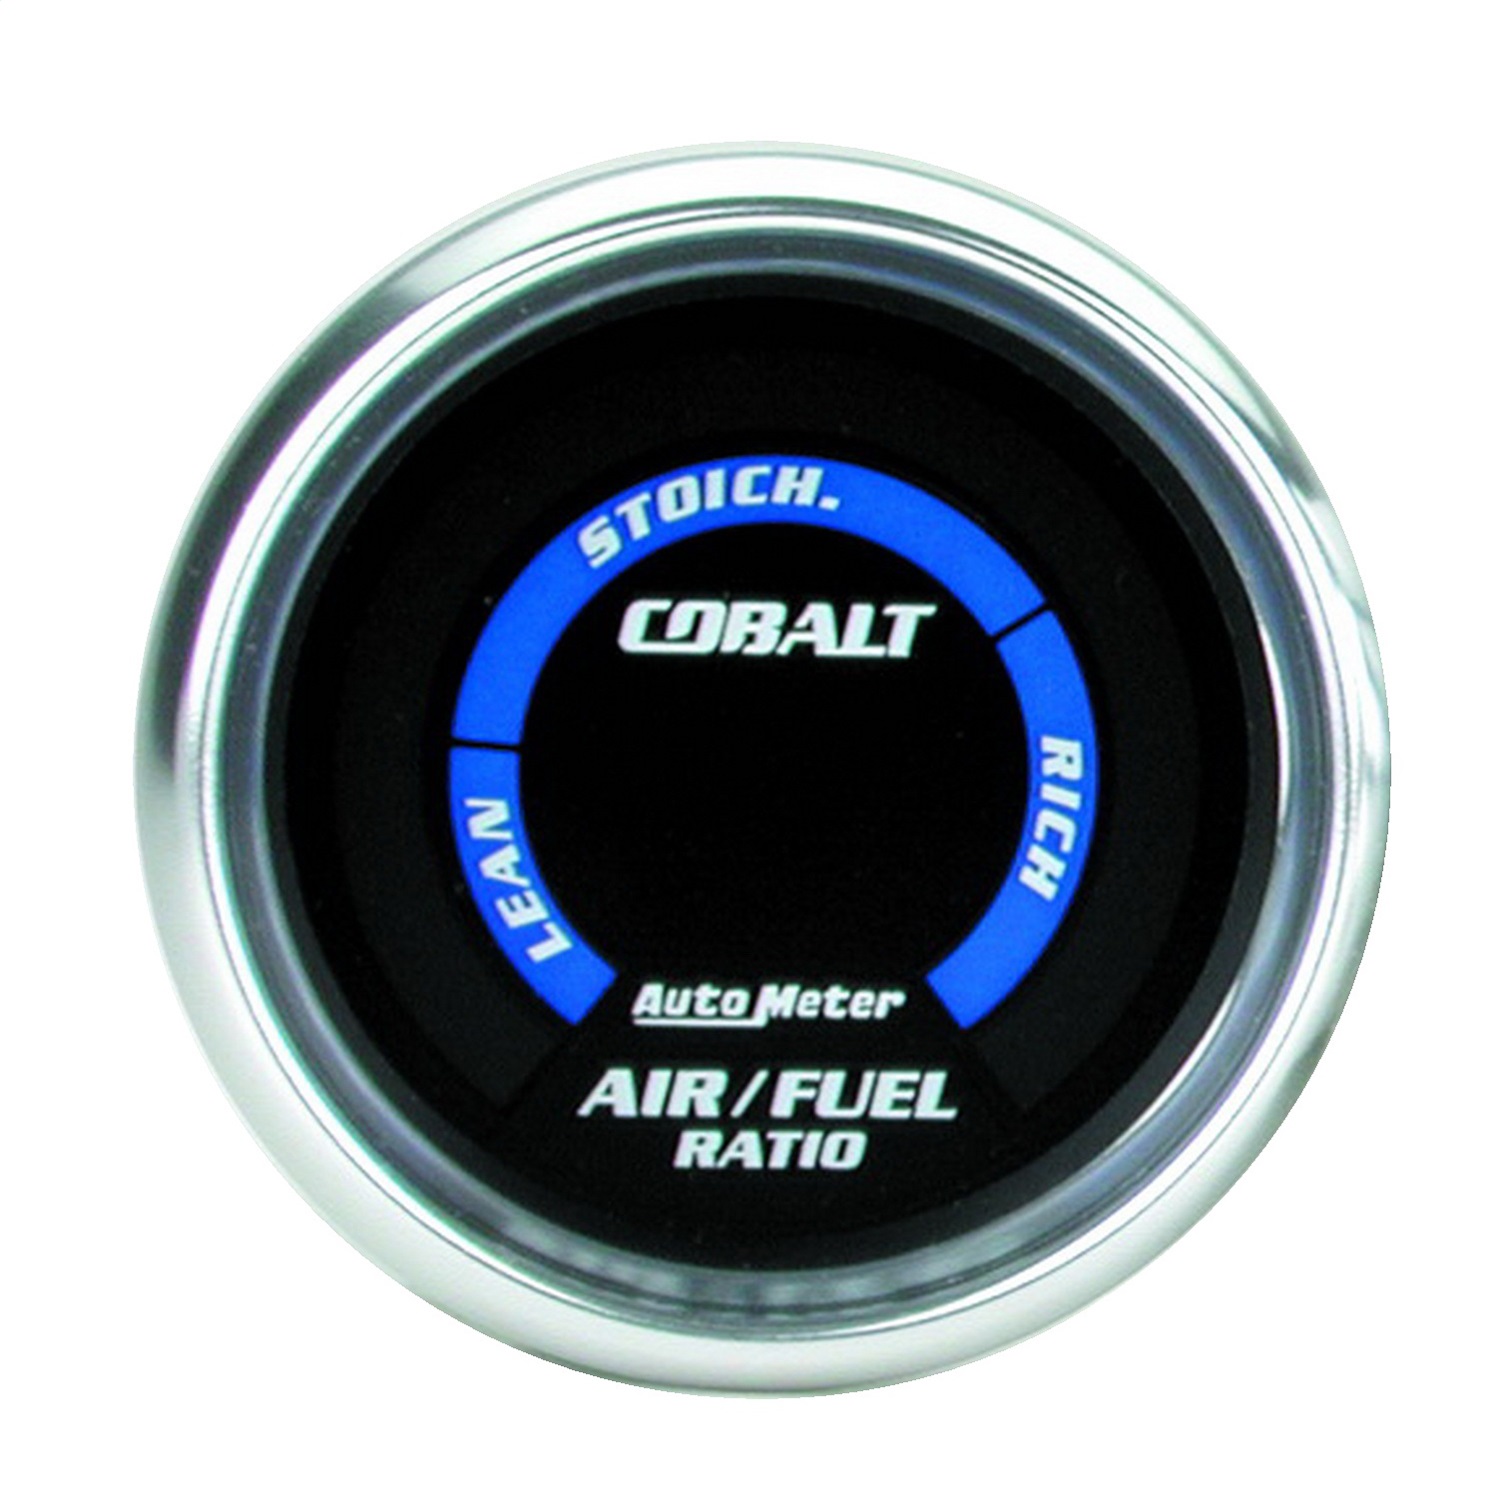 Auto Meter Auto Meter 6175 Cobalt; Electric Air Fuel Ratio Gauge